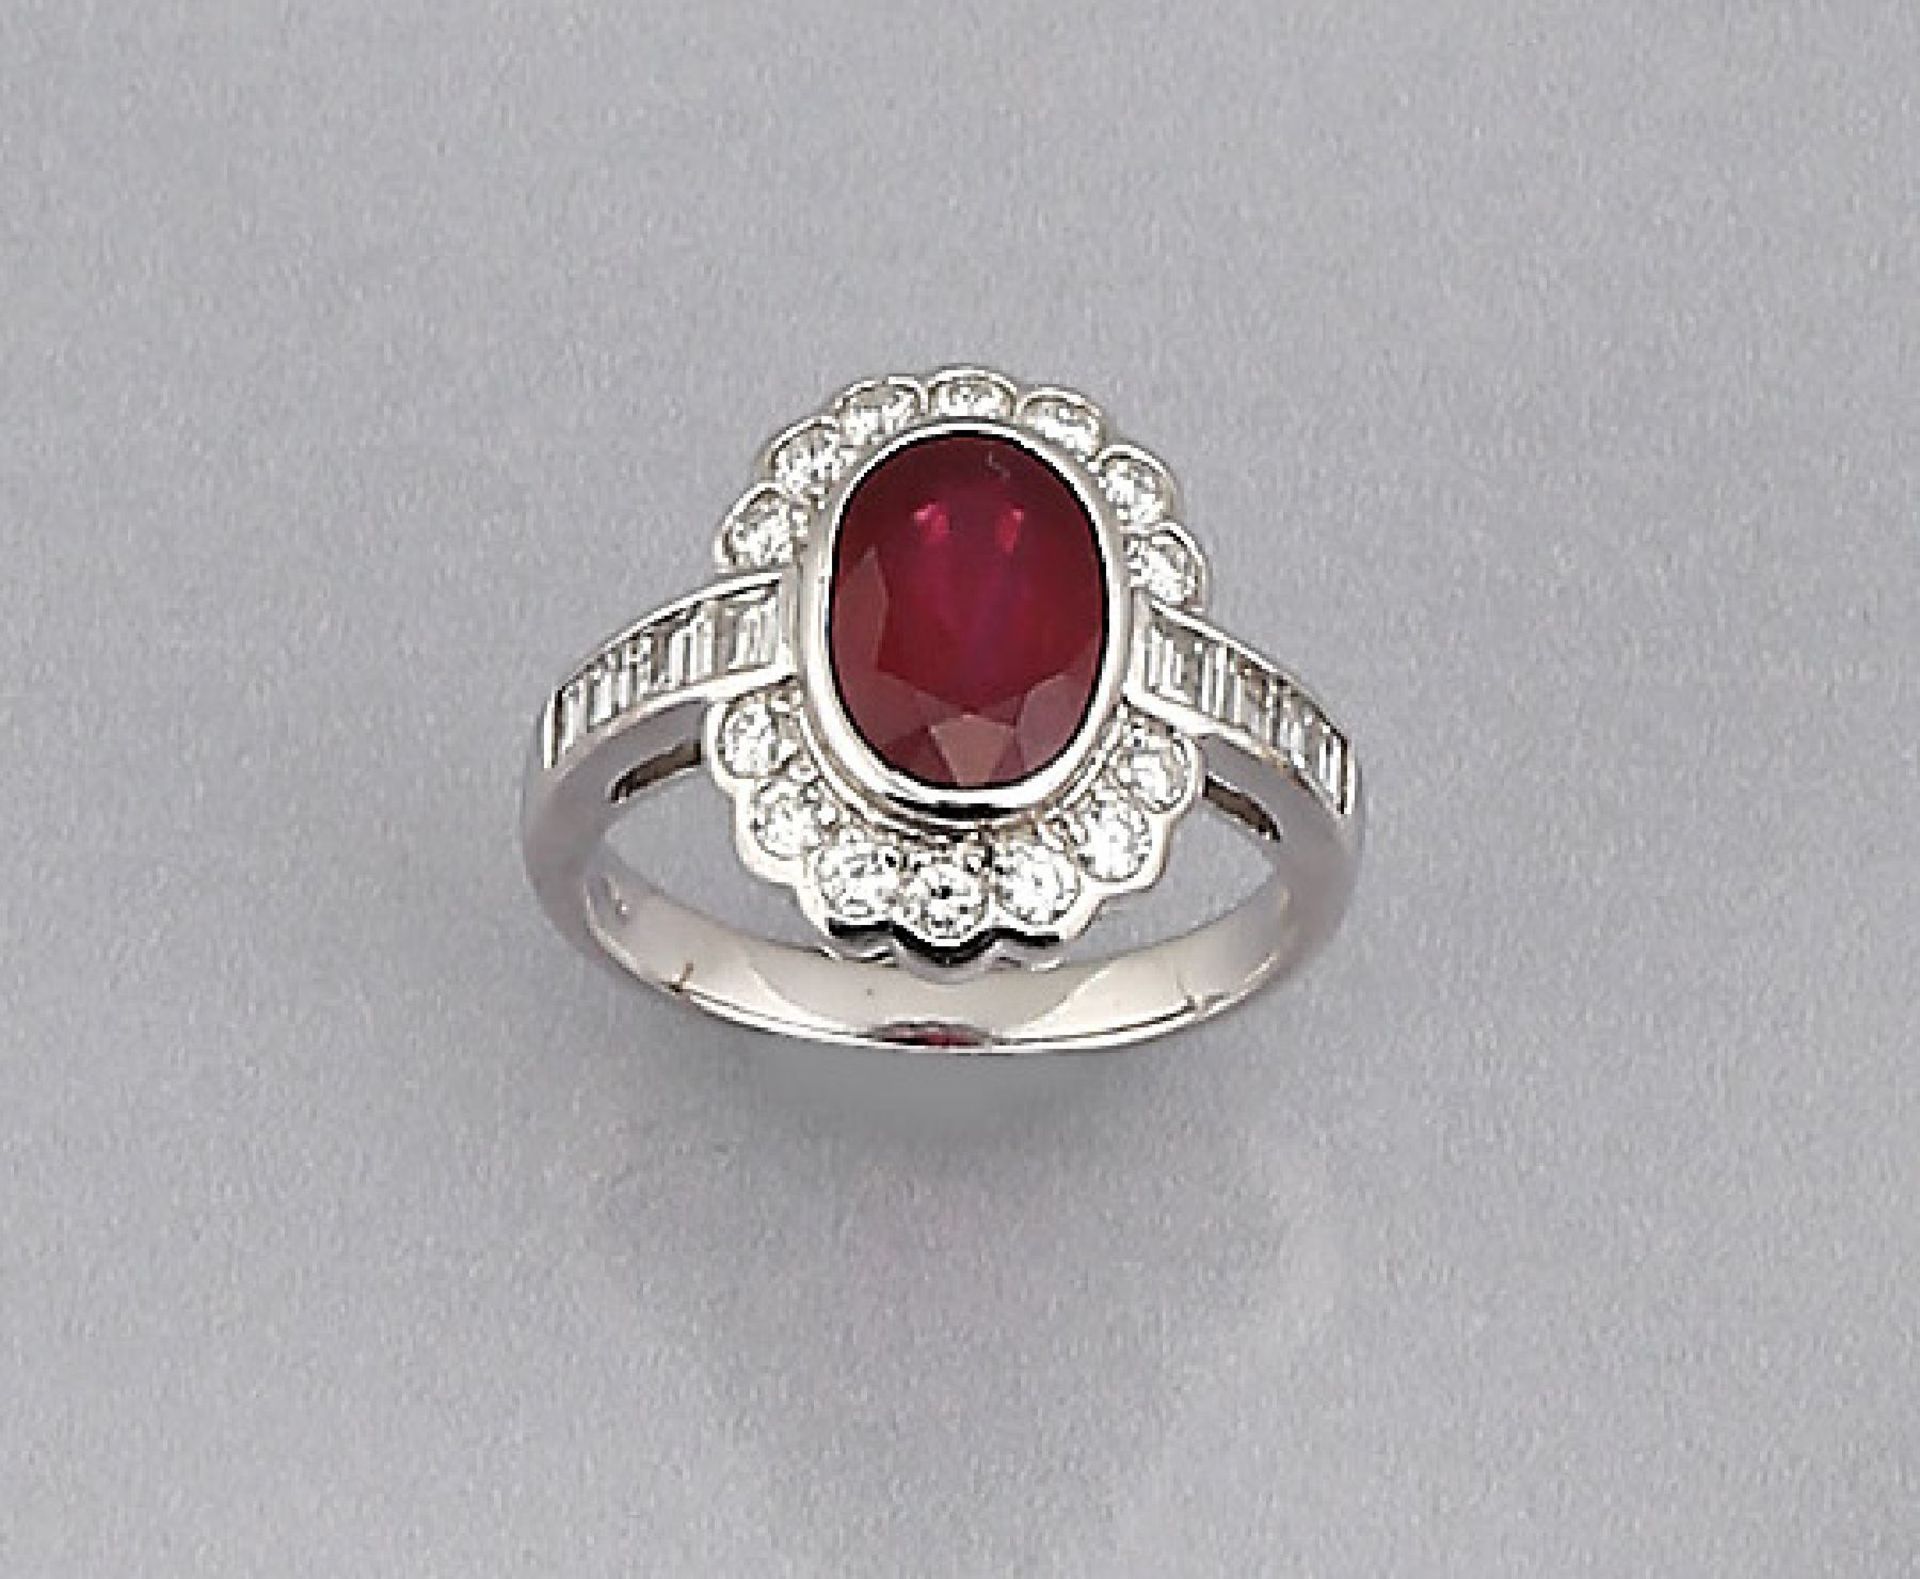 Platin Ring mit Rubin und Diamanten, ovalfacett. Rubin ca. 2.80 ct von sehr schöner Farbe,